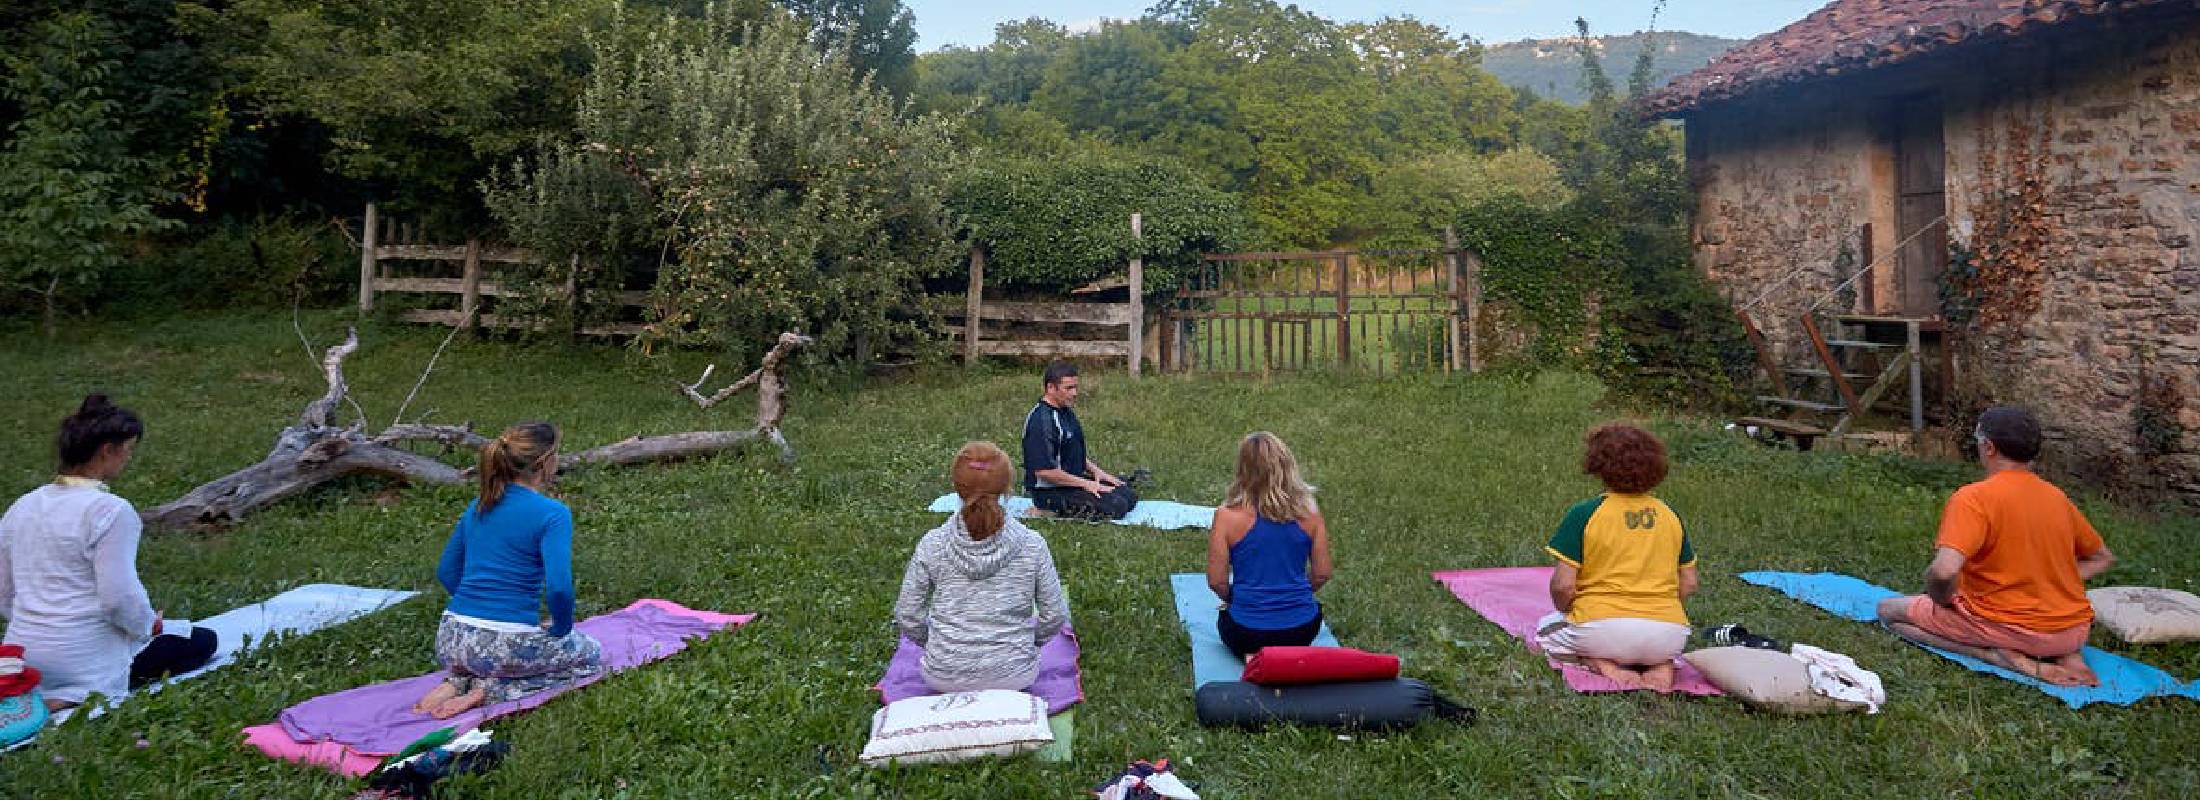 Talleres de yoga en la naturaleza navarra 